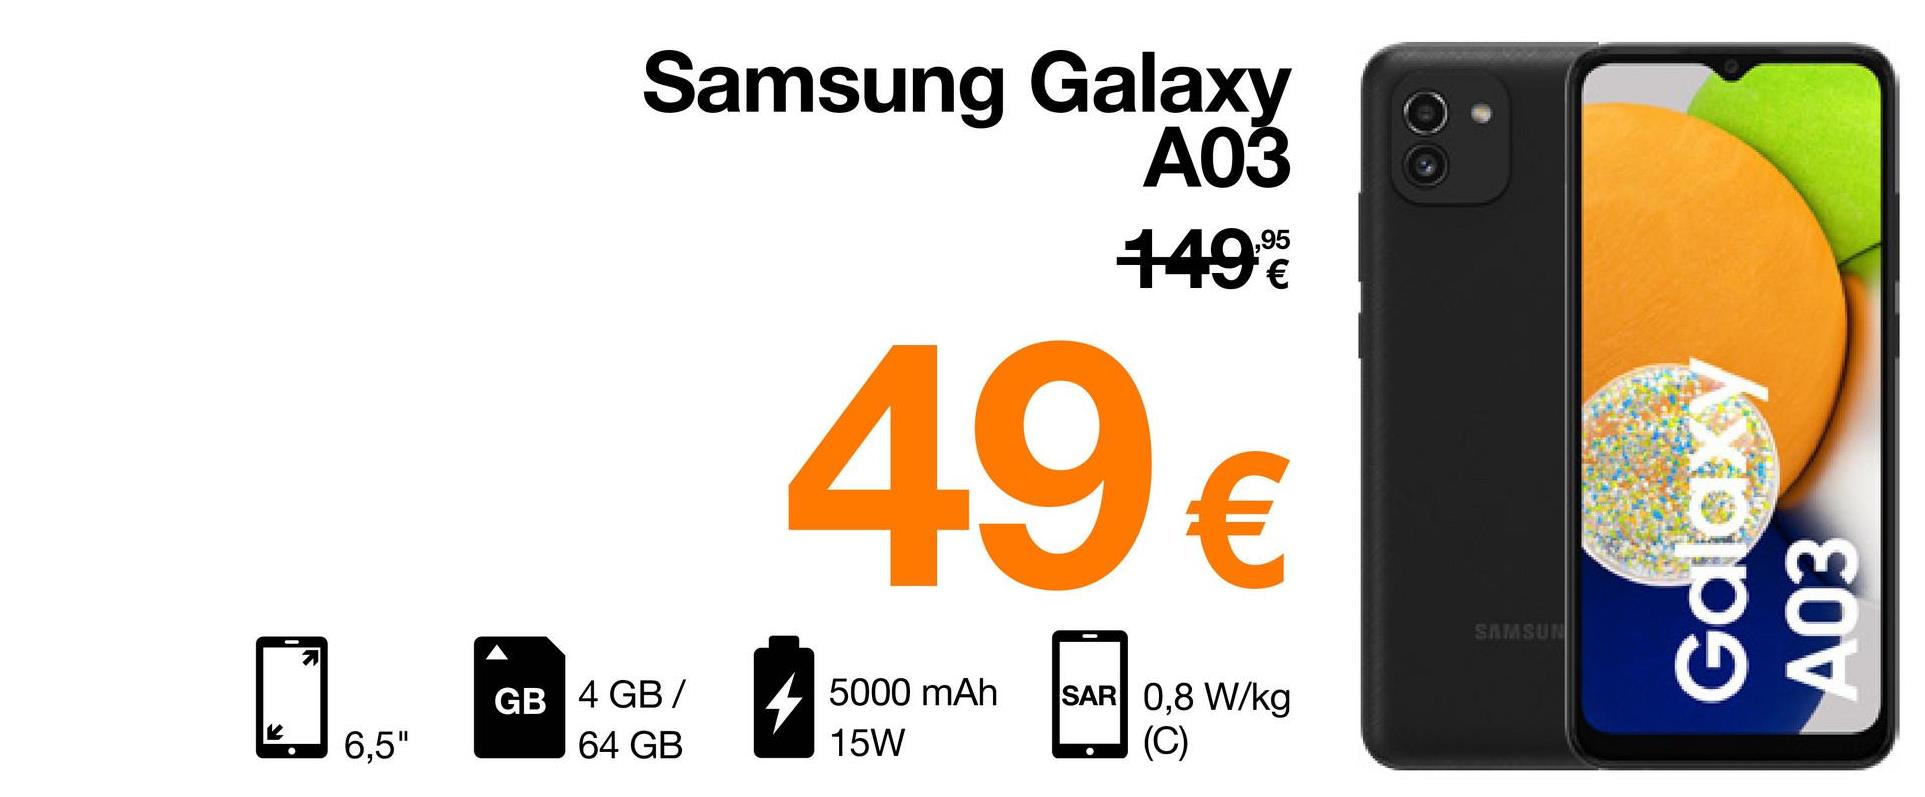 K
2
6,5"
Samsung Galaxy
A03
149€
49 €
5000 mAh
SAR 0,8 W/kg
(C)
15W
GB 4 GB/
64 GB
SAMSUN
Galaxy
A03